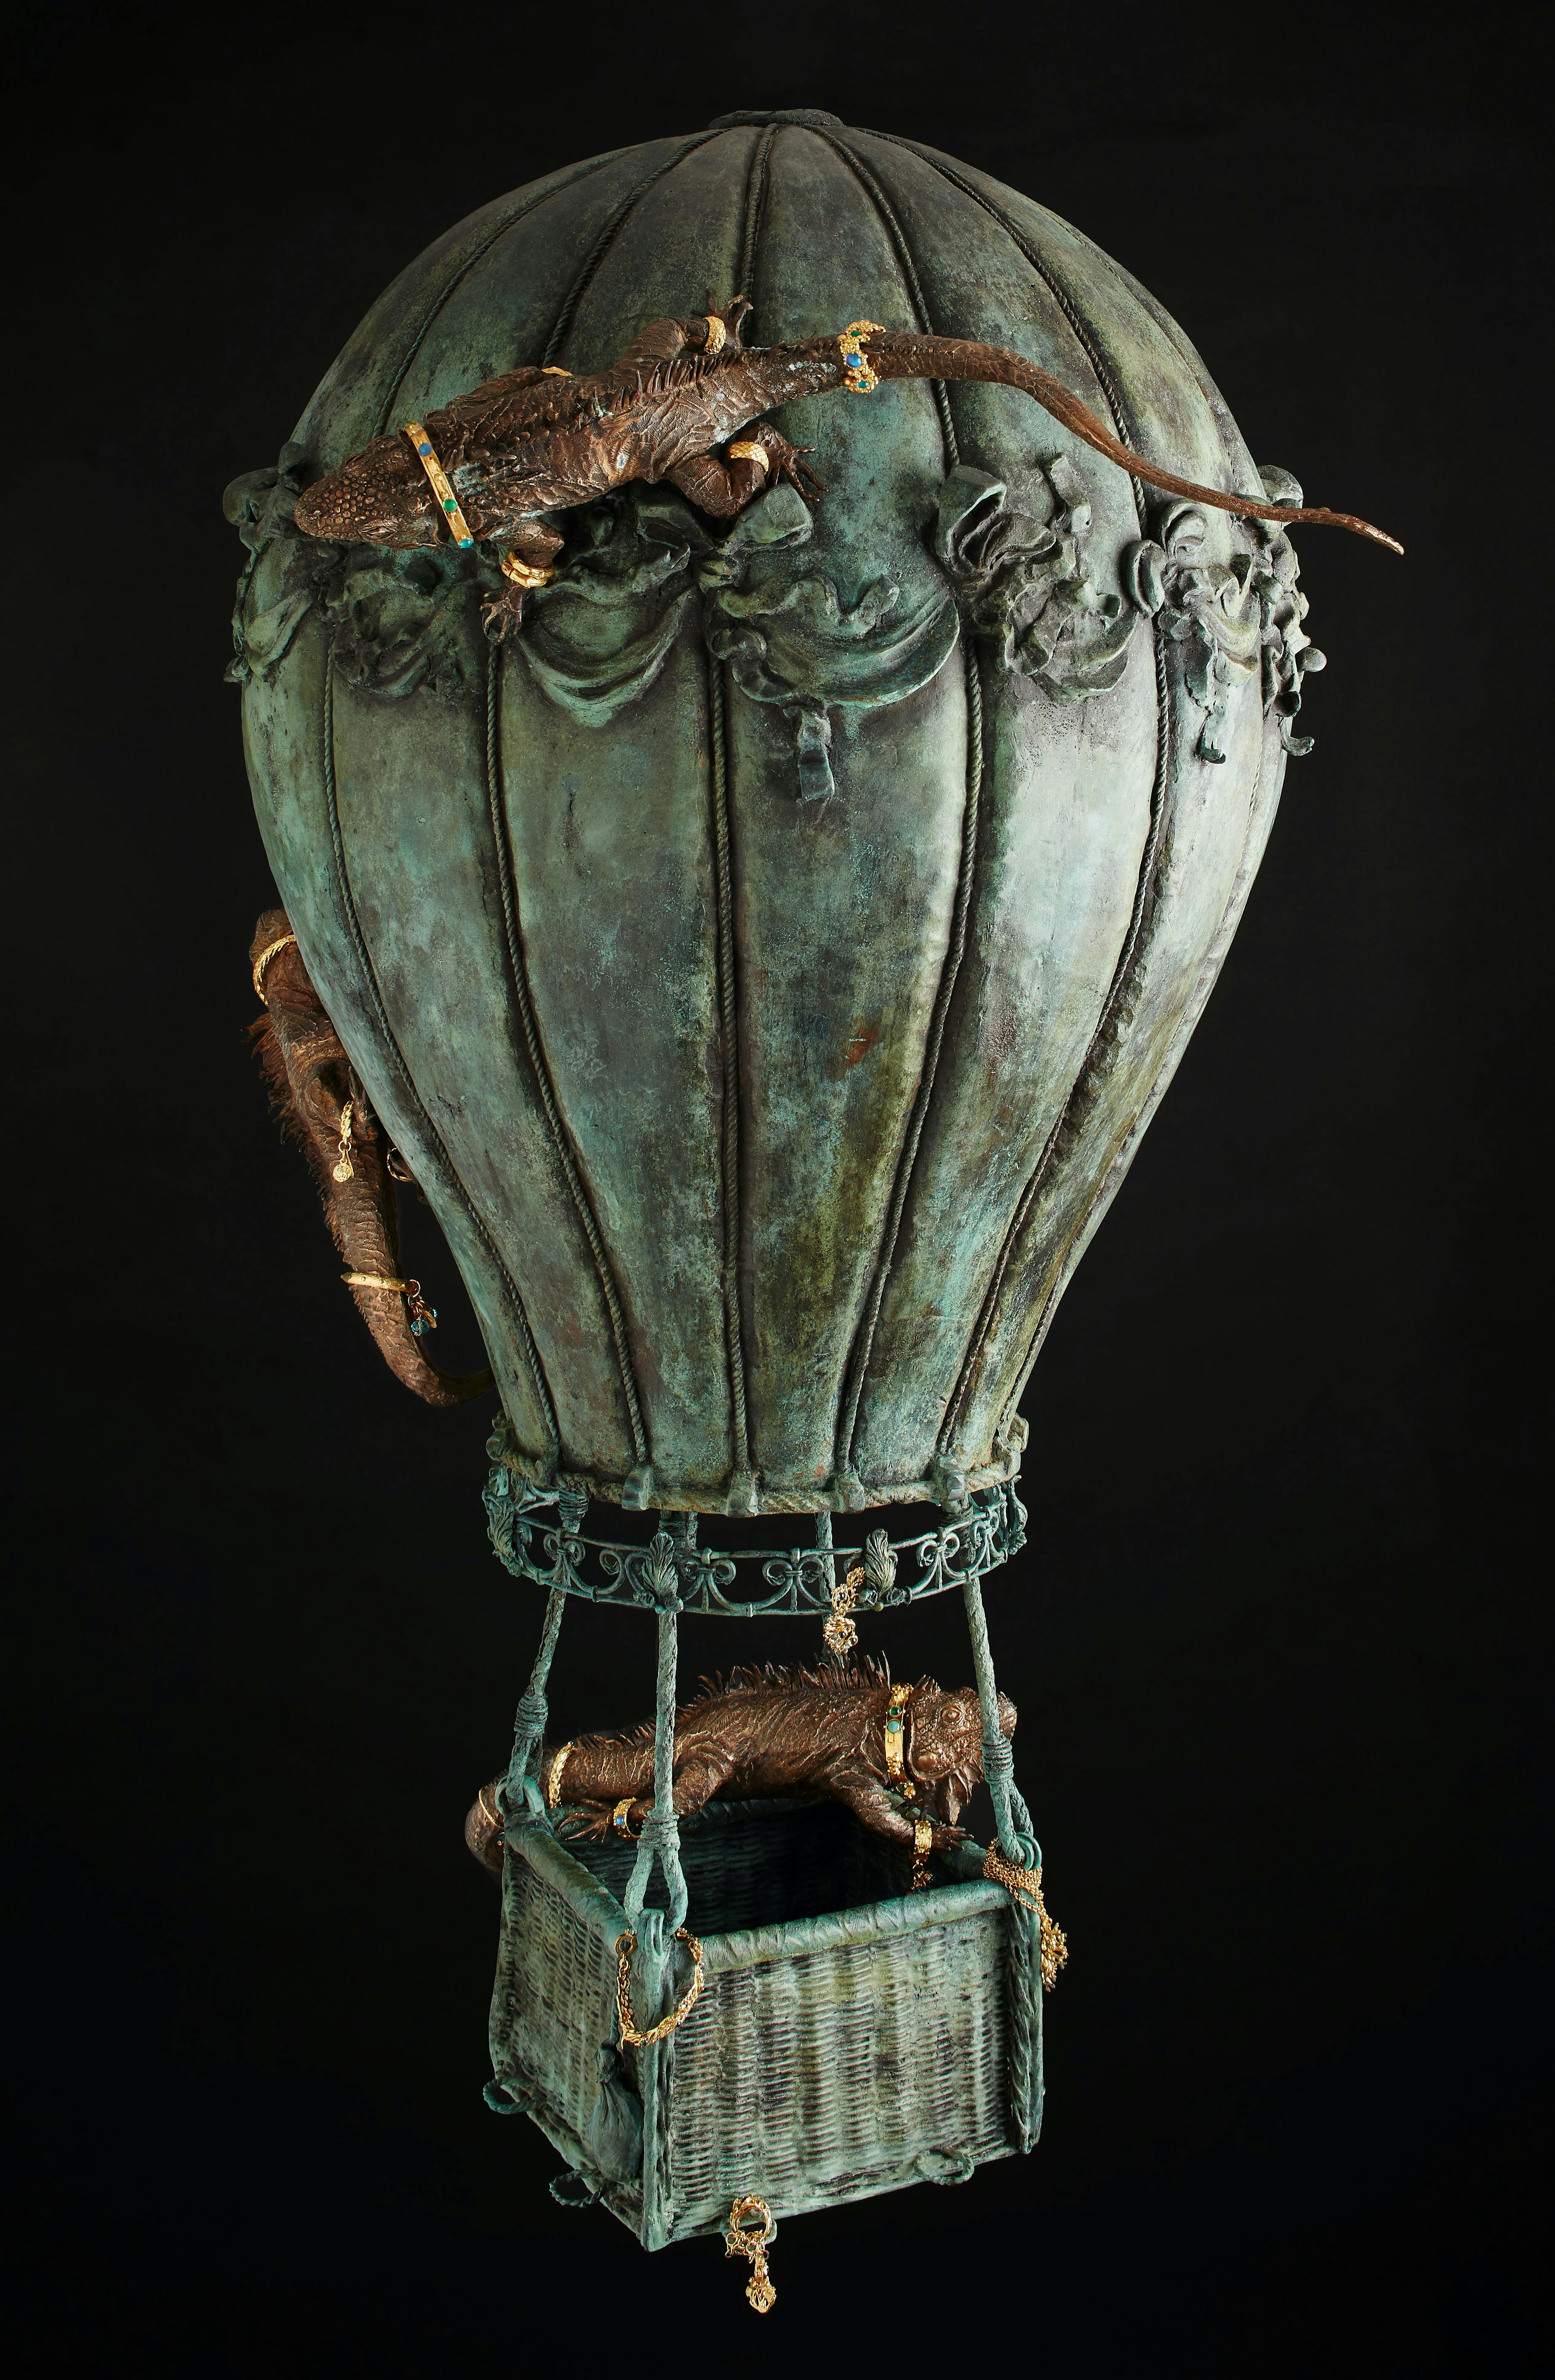  Il gioiello-mongolfiera realizzato dagli scultori Lucio Minigrilli ed Erika Corsi.